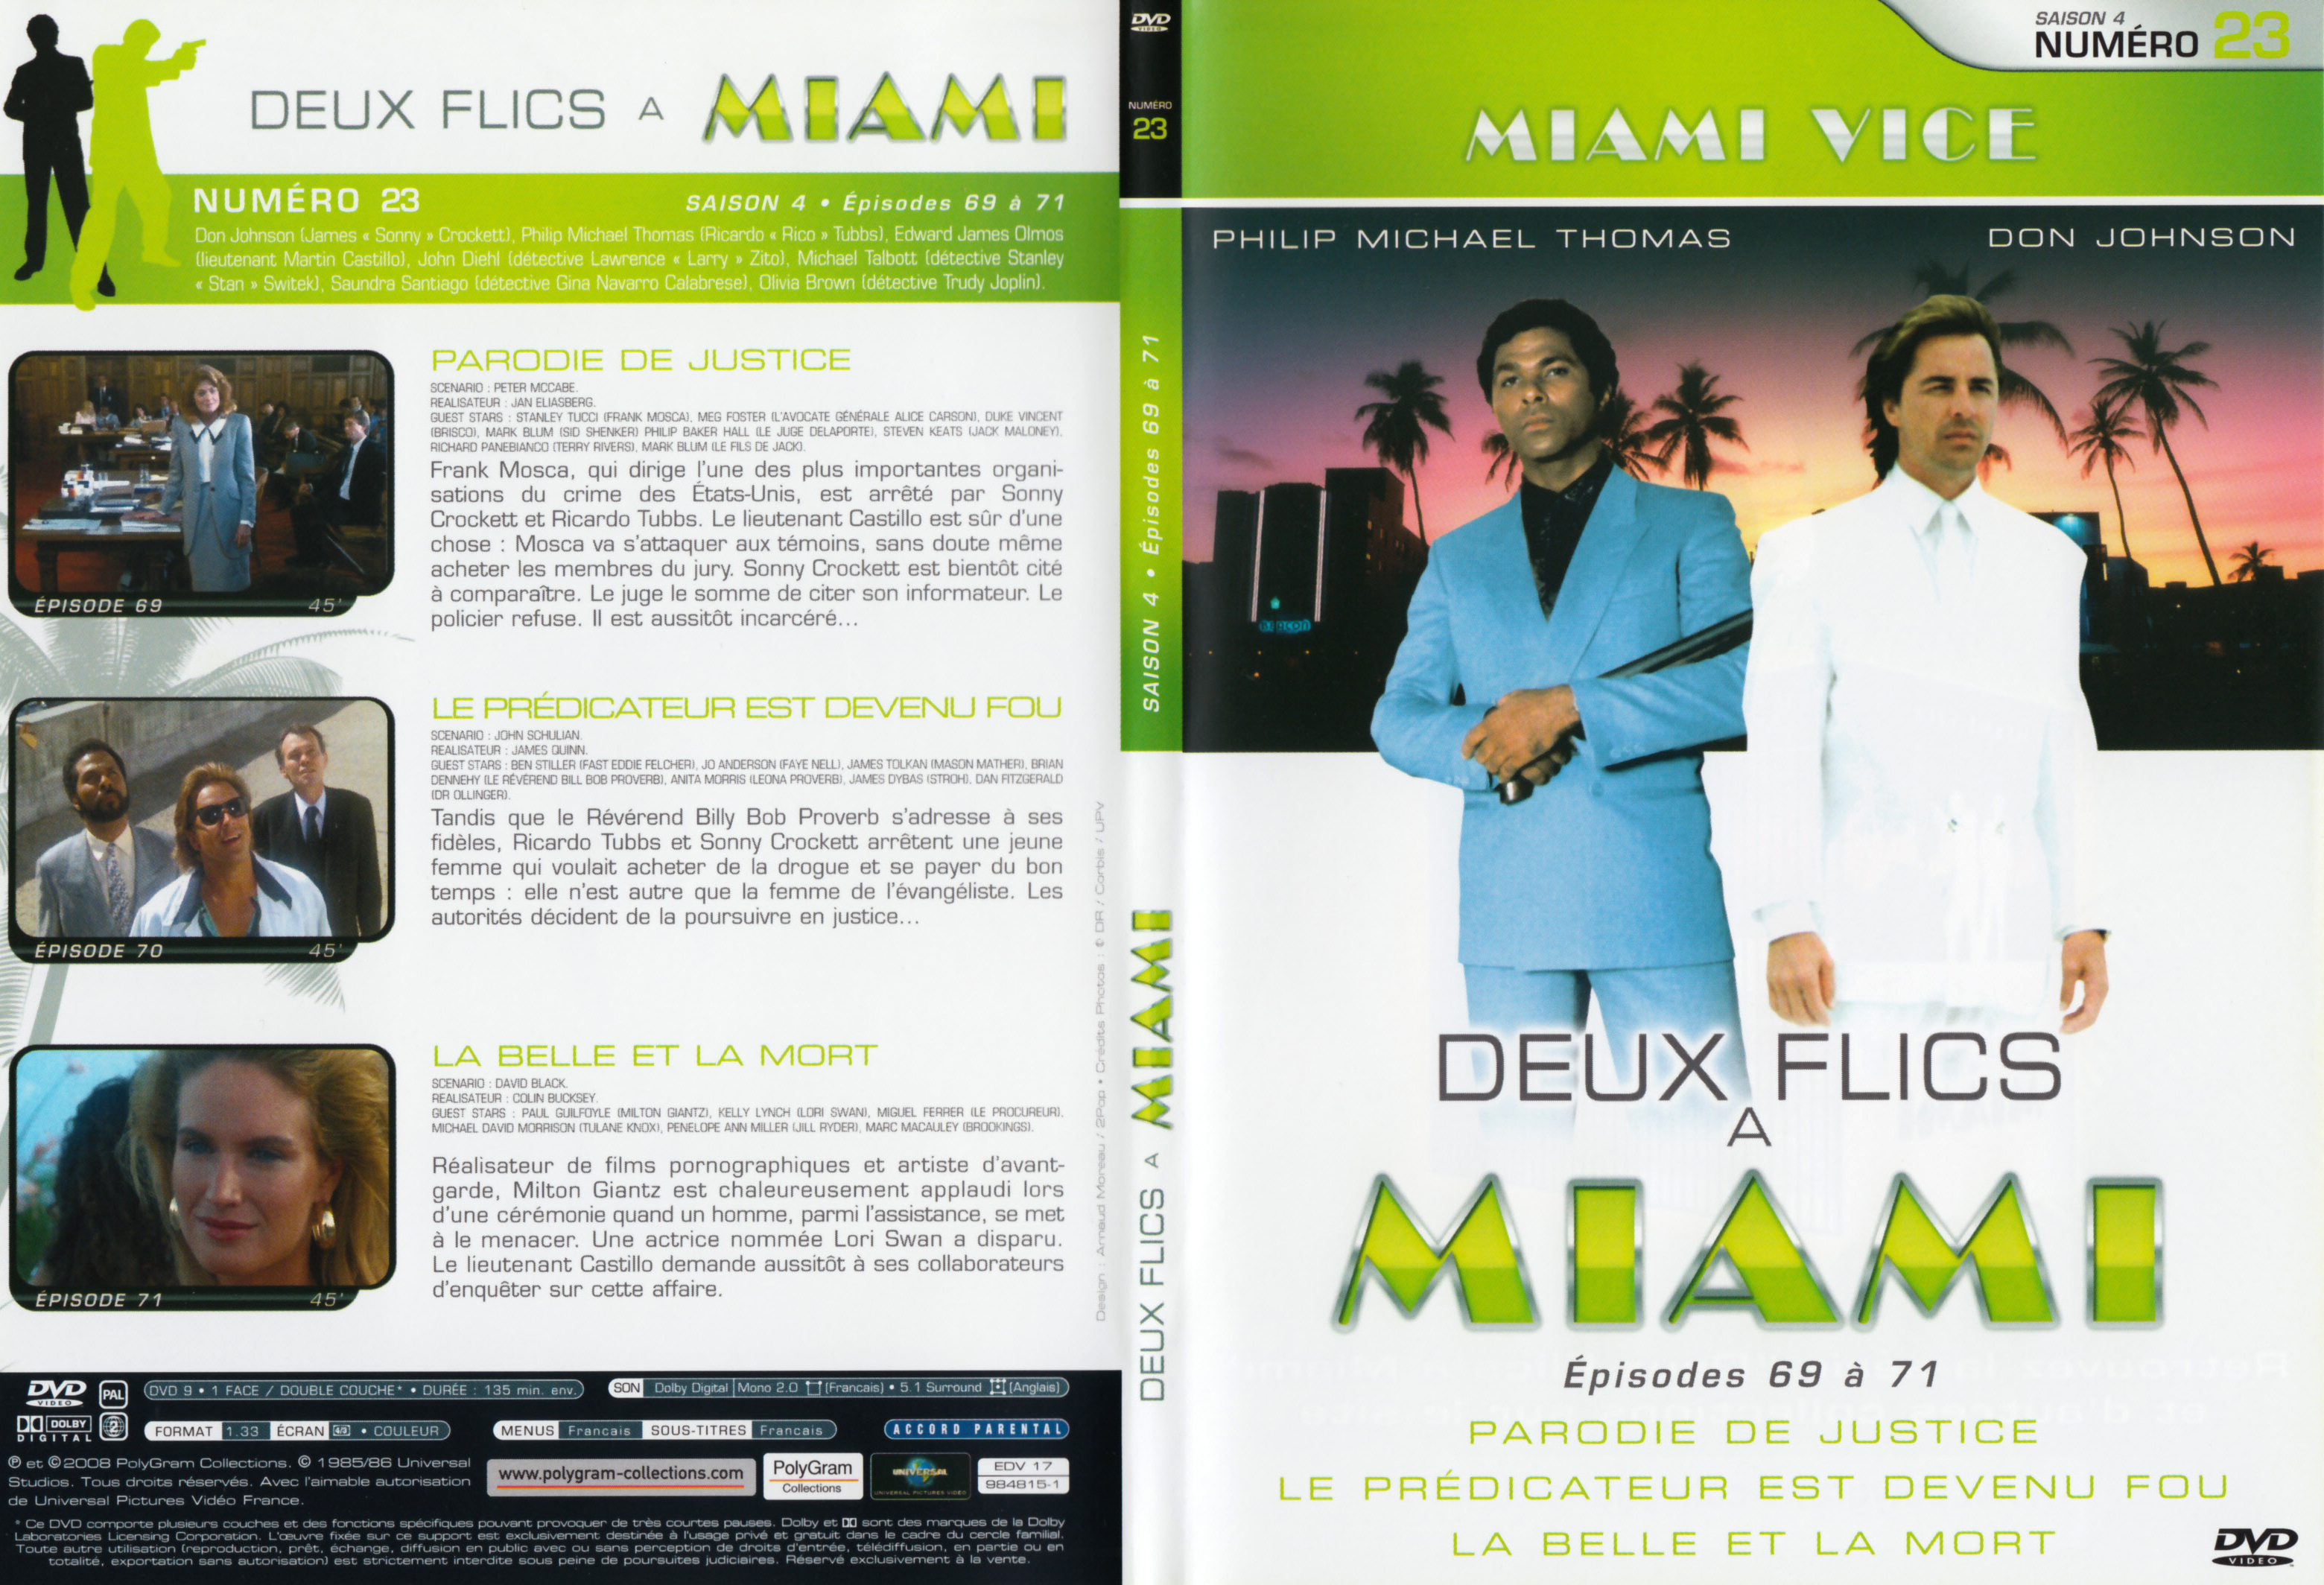 Jaquette DVD Deux flics  Miami Saison 4 vol 23